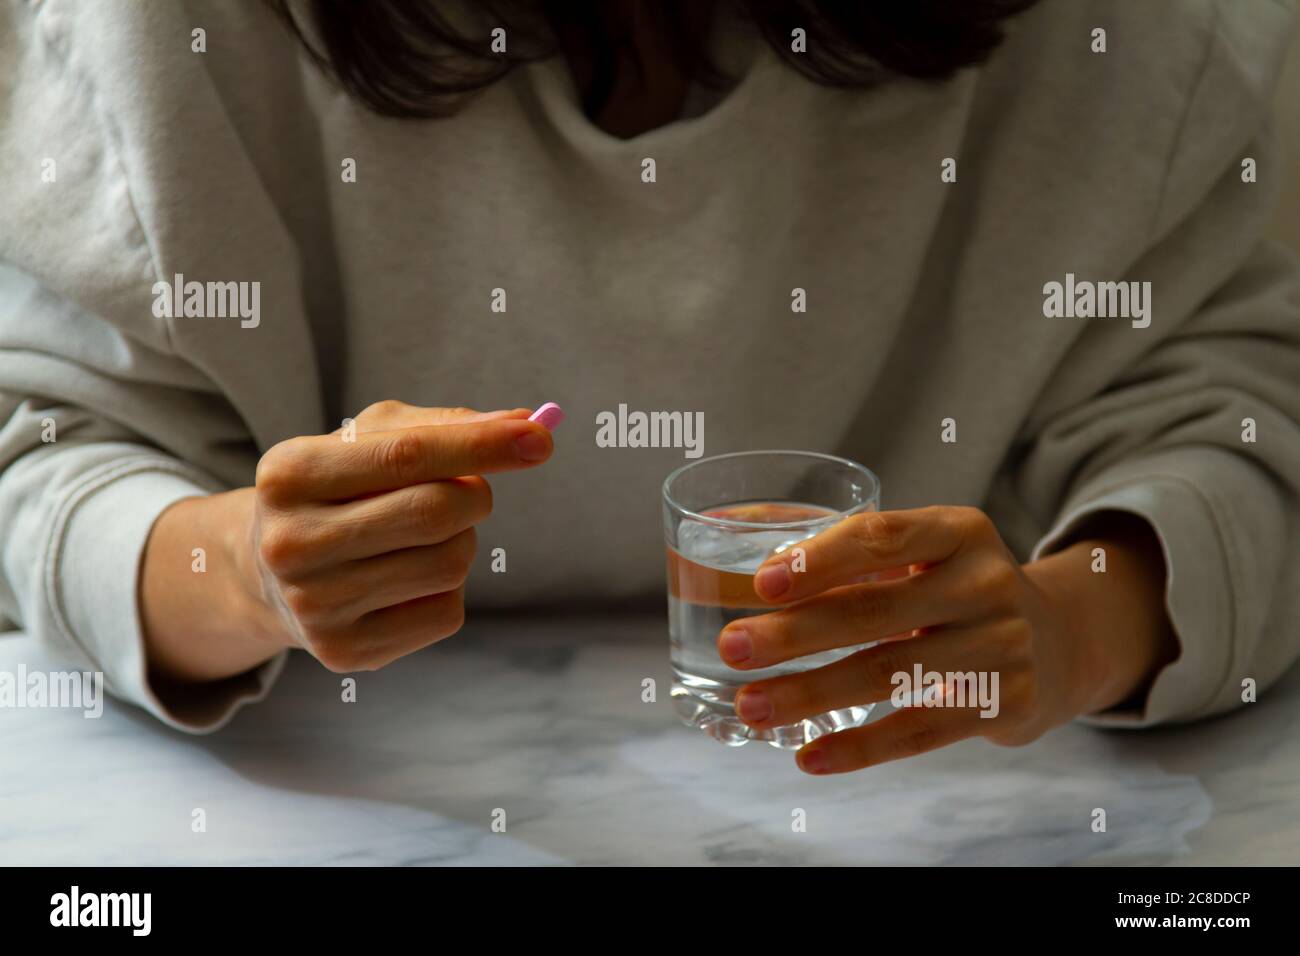 Eine Frau wird gesehen, wie sie eine Pille in der einen Hand und ein Glas Wasser auf der anderen Hand hält. Sie ist dabei, die Medikamente mit einem Schluck Wasser einzunehmen. Stockfoto